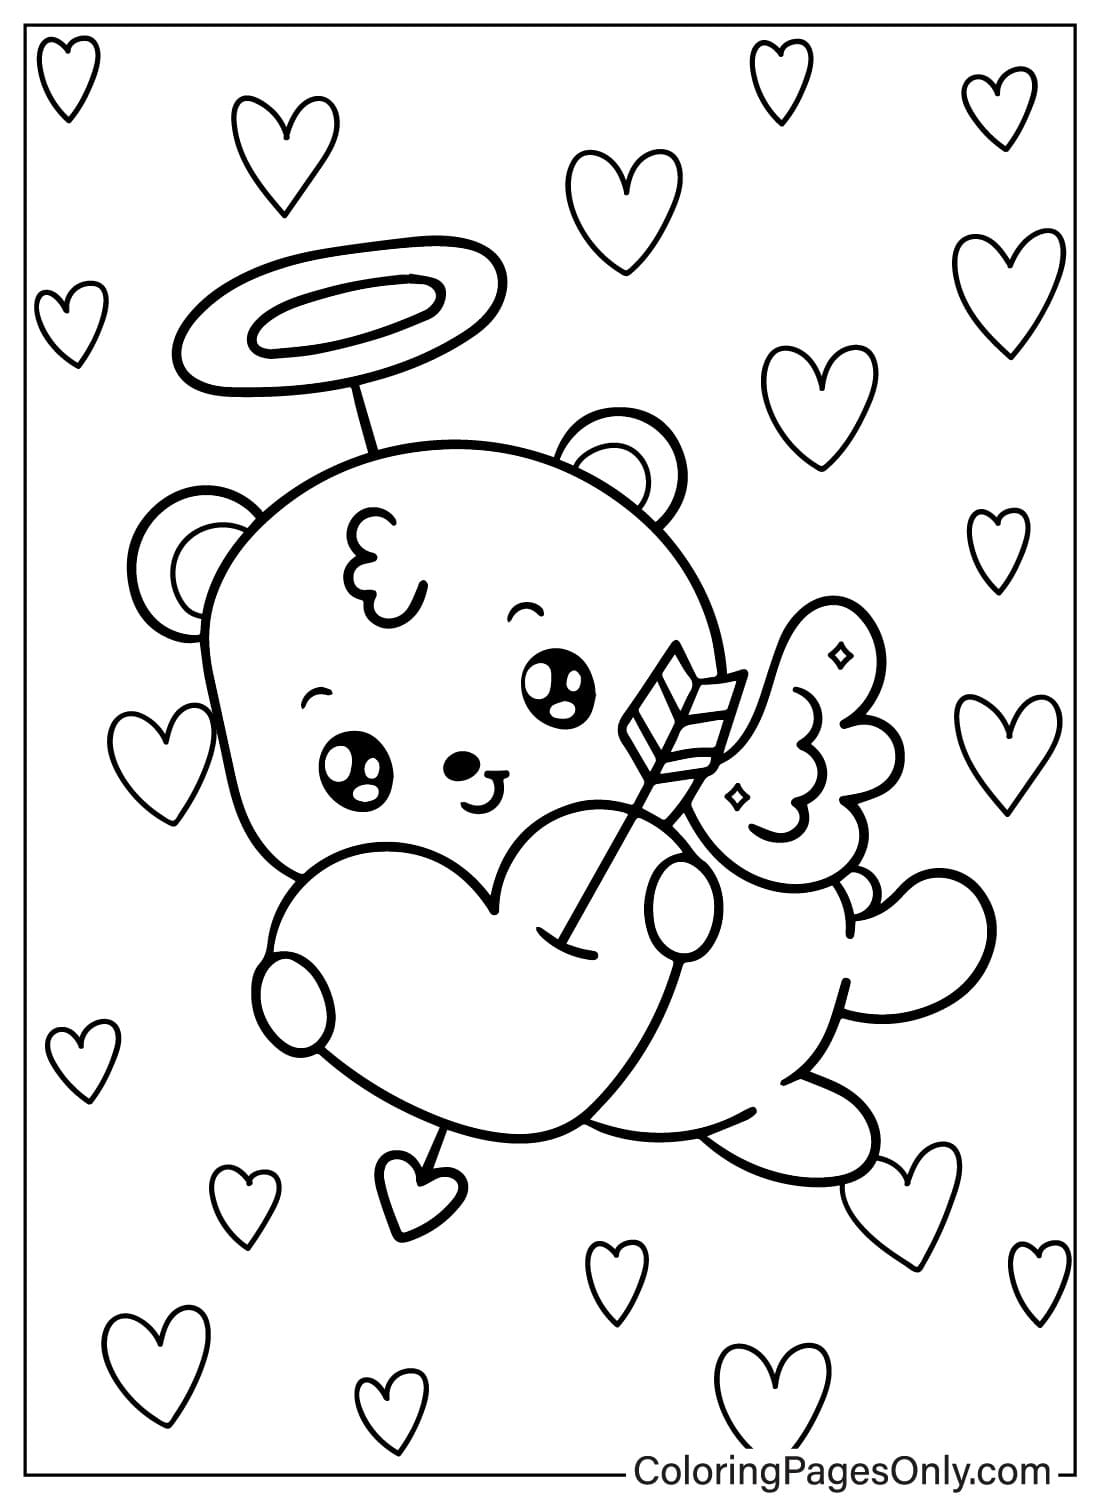 Página para colorear de Cupido para imprimir gratis de Cupido